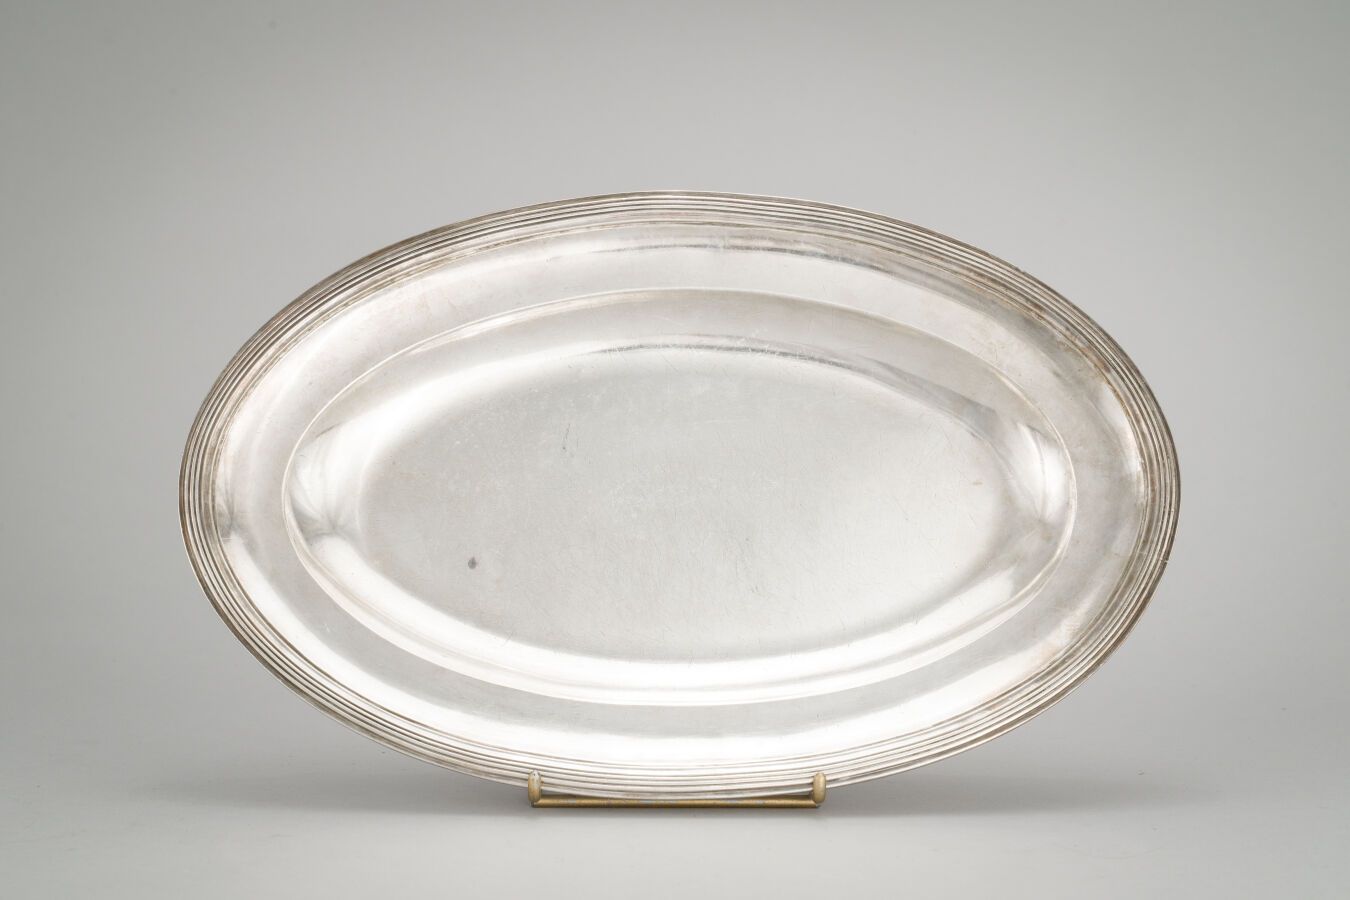 Null 97. Un plato ovalado de plata (950/1000) con bordes fileteados.

París 1798&hellip;